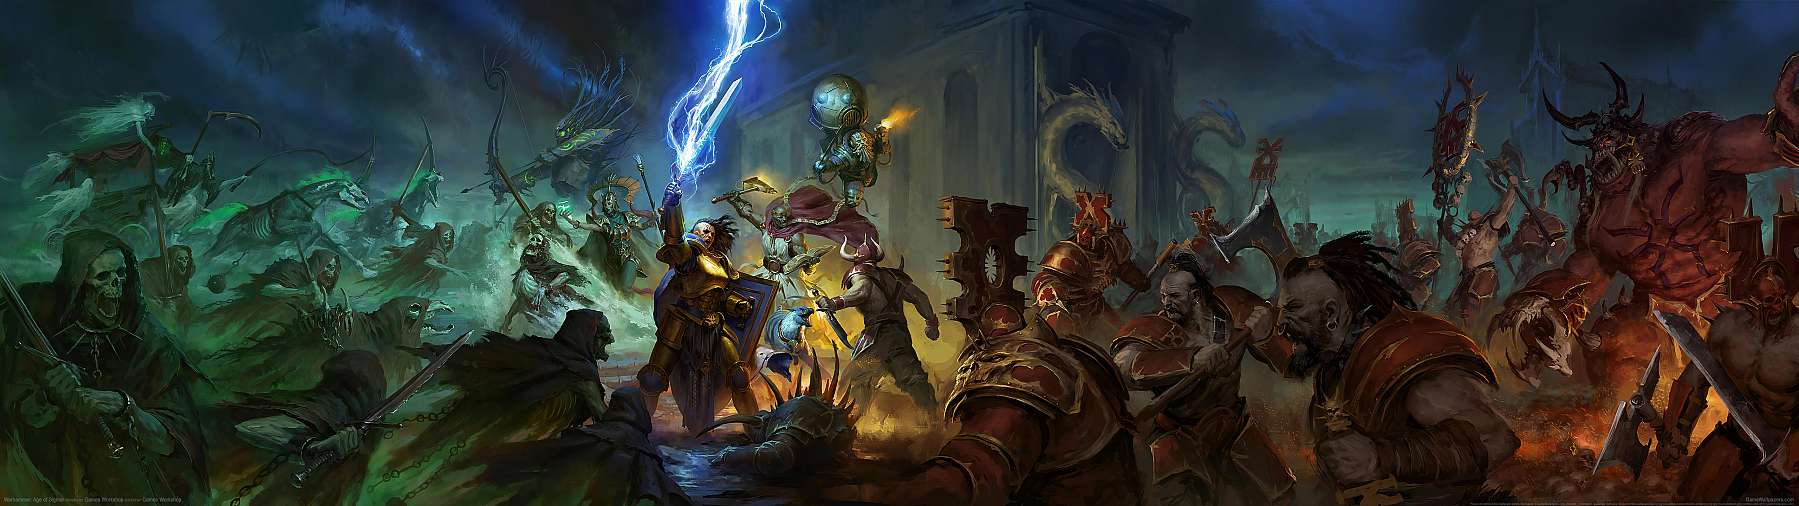 Warhammer: Age of Sigmar superwide Hintergrundbild 03